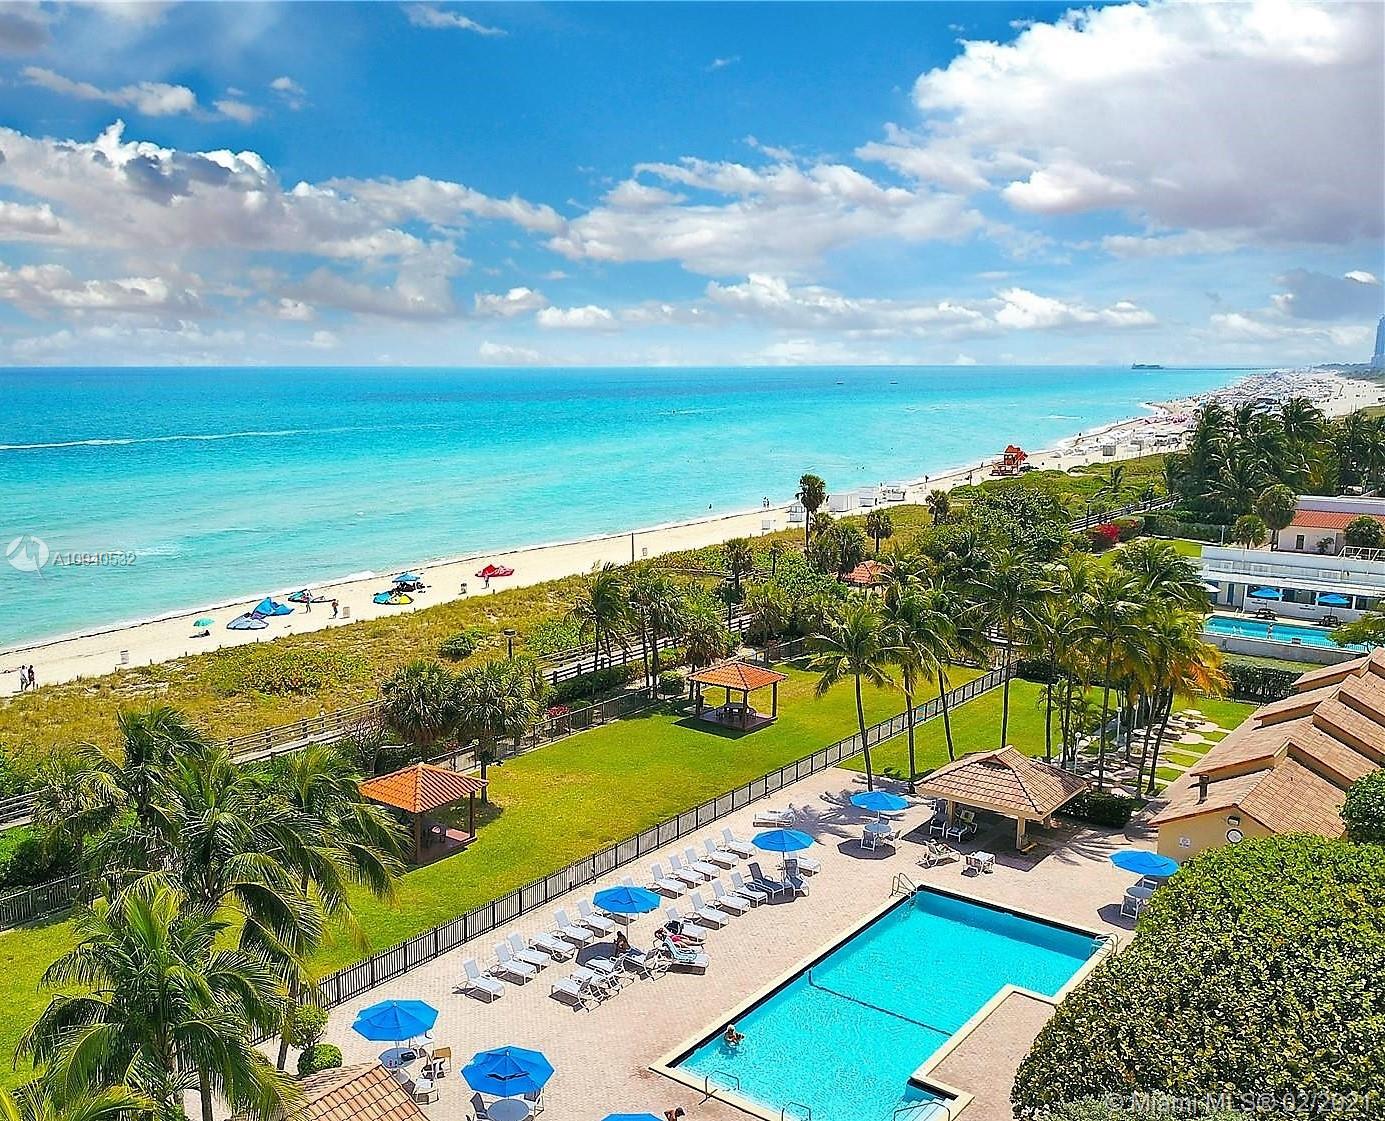 Club Atlantis Unit #1505 Condo for Sale in Mid-Beach - Miami Beach